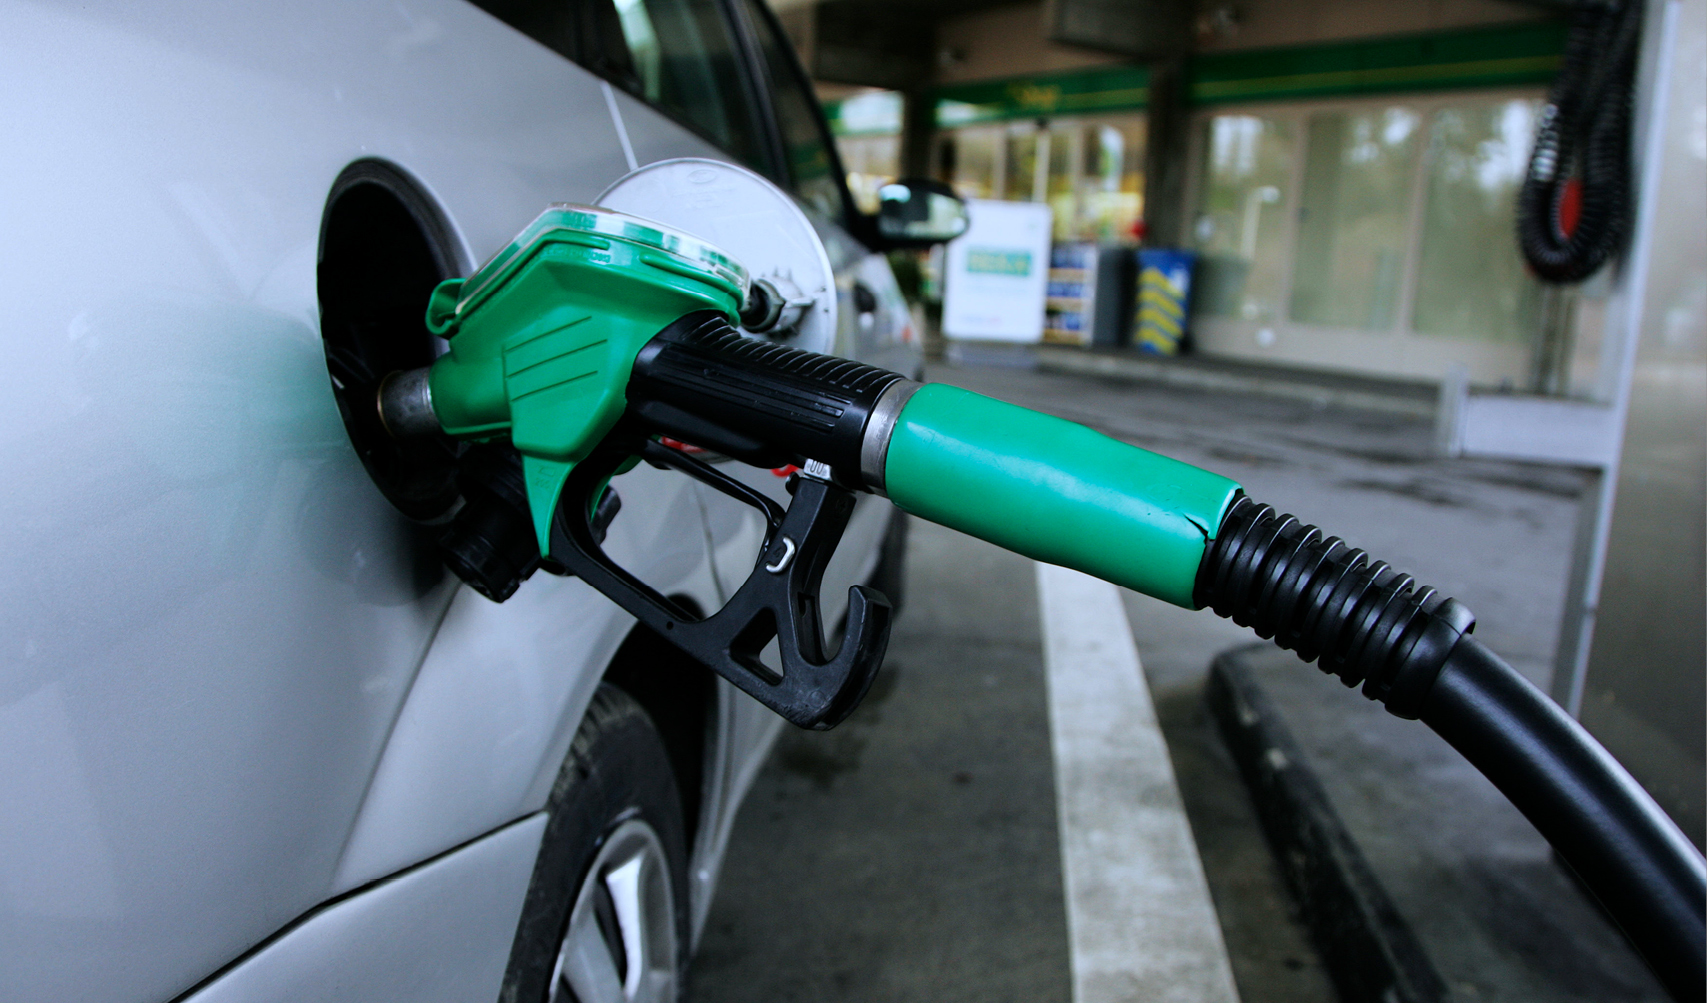 "كفاءة": موازنة إطارات السيارة تطيل عمرها وتقلل استهلاك الوقود 15